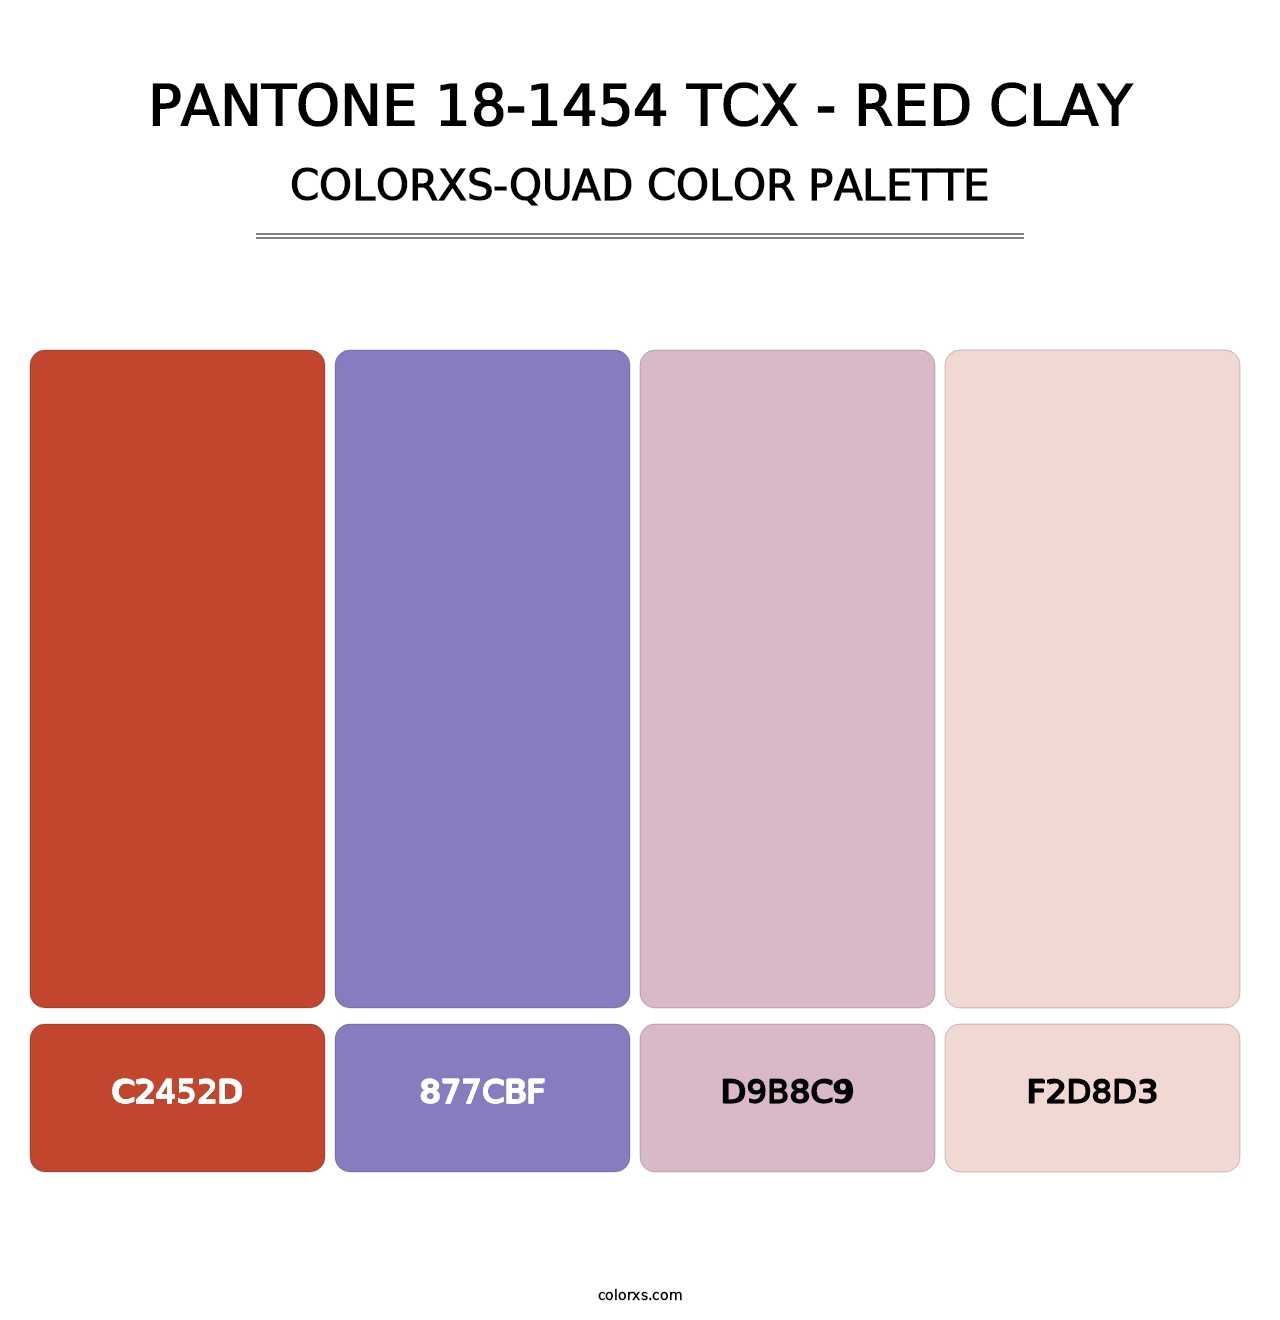 PANTONE 18-1454 TCX - Red Clay - Colorxs Quad Palette